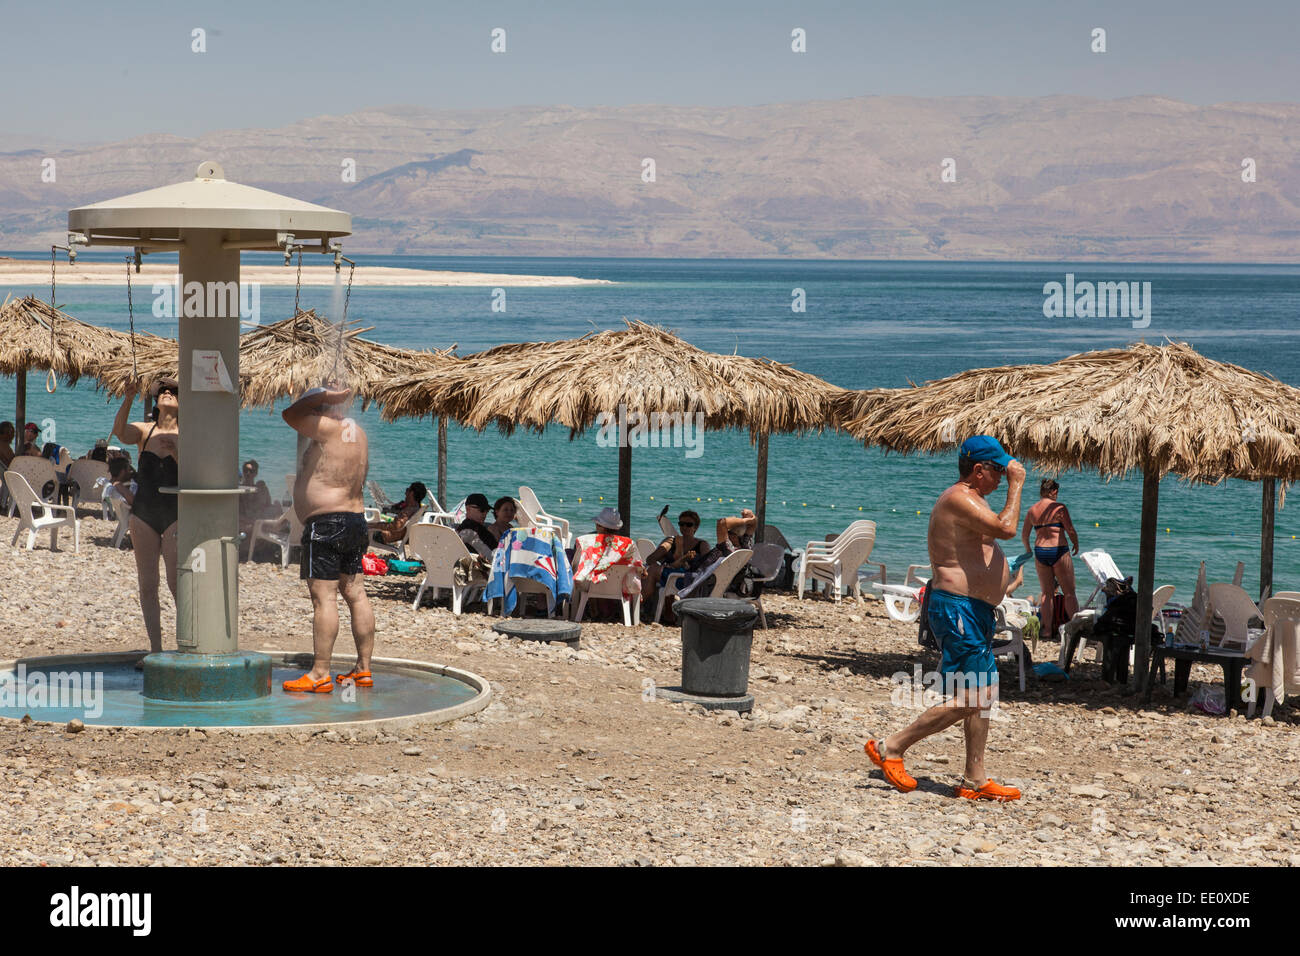 Les touristes le bain et la douche à la mer Morte, Israël Banque D'Images